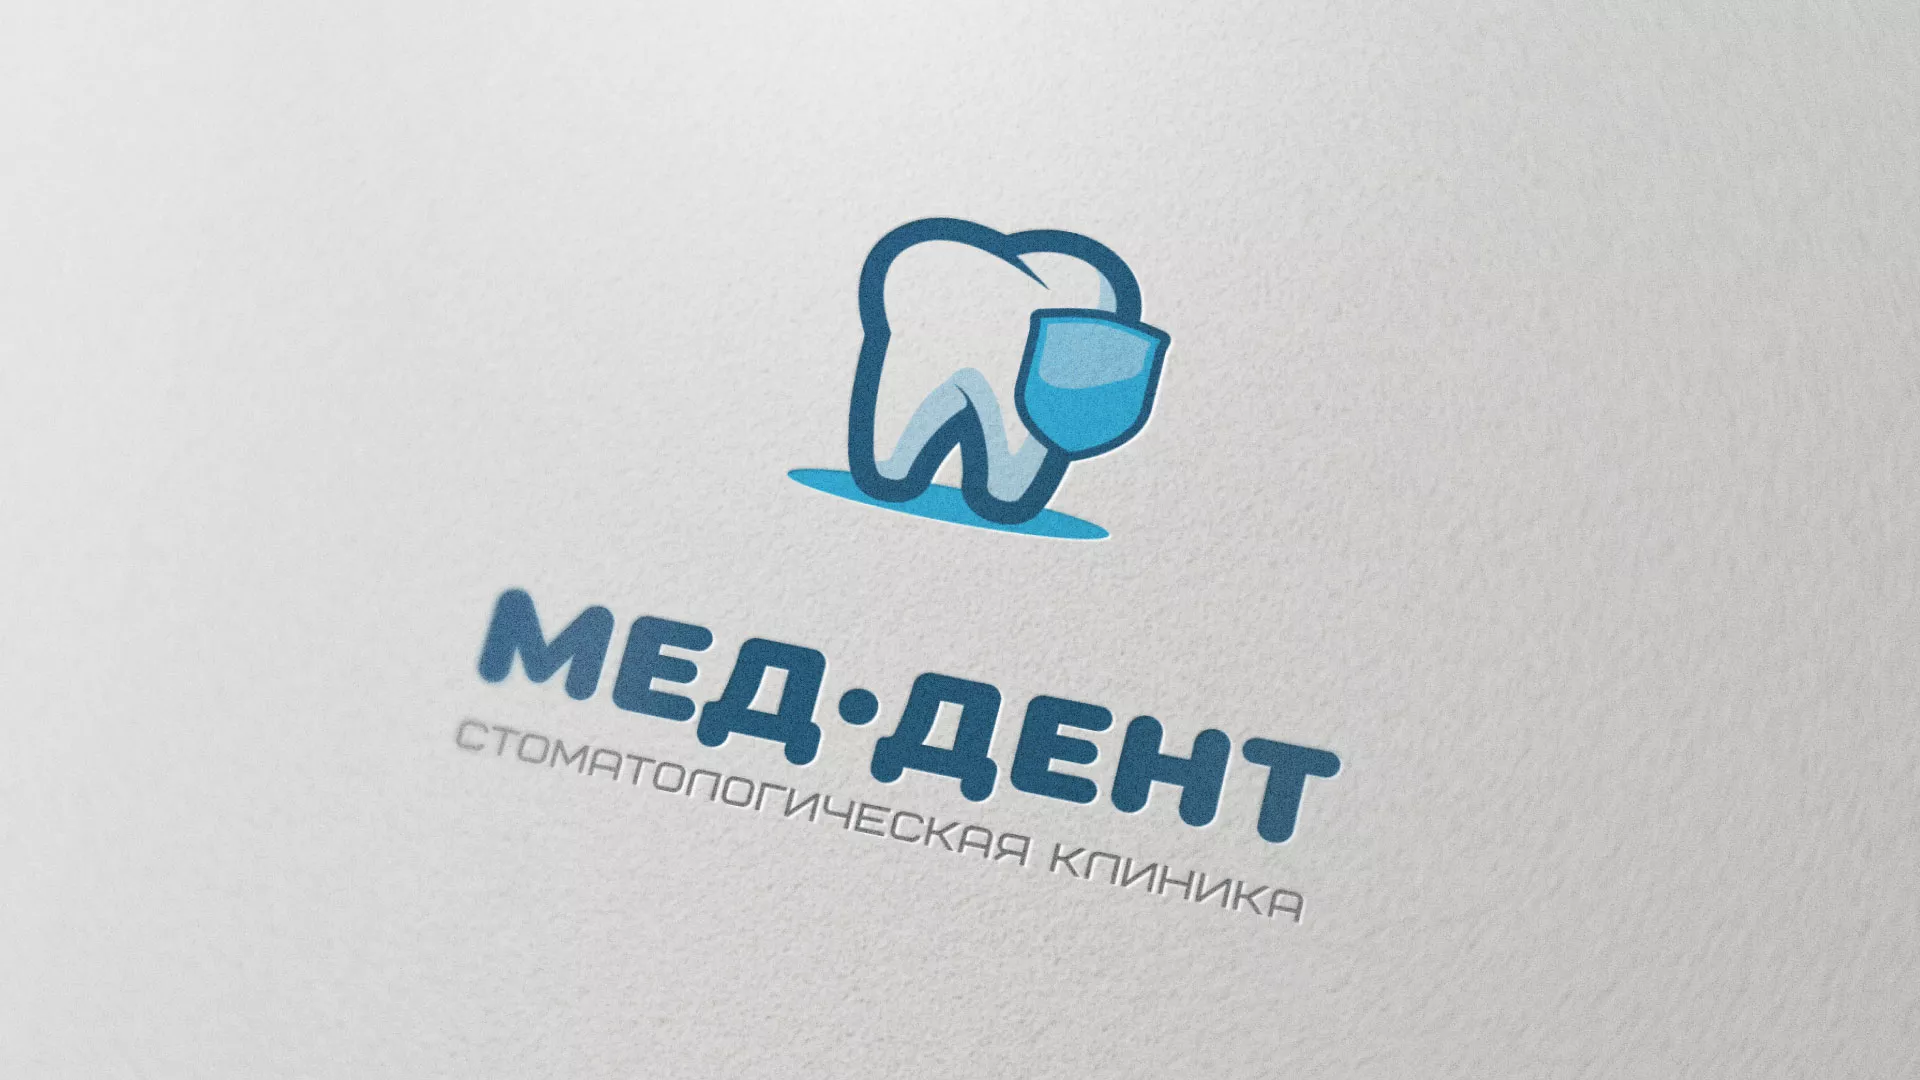 Разработка логотипа стоматологической клиники «МЕД-ДЕНТ» в Красном Селе